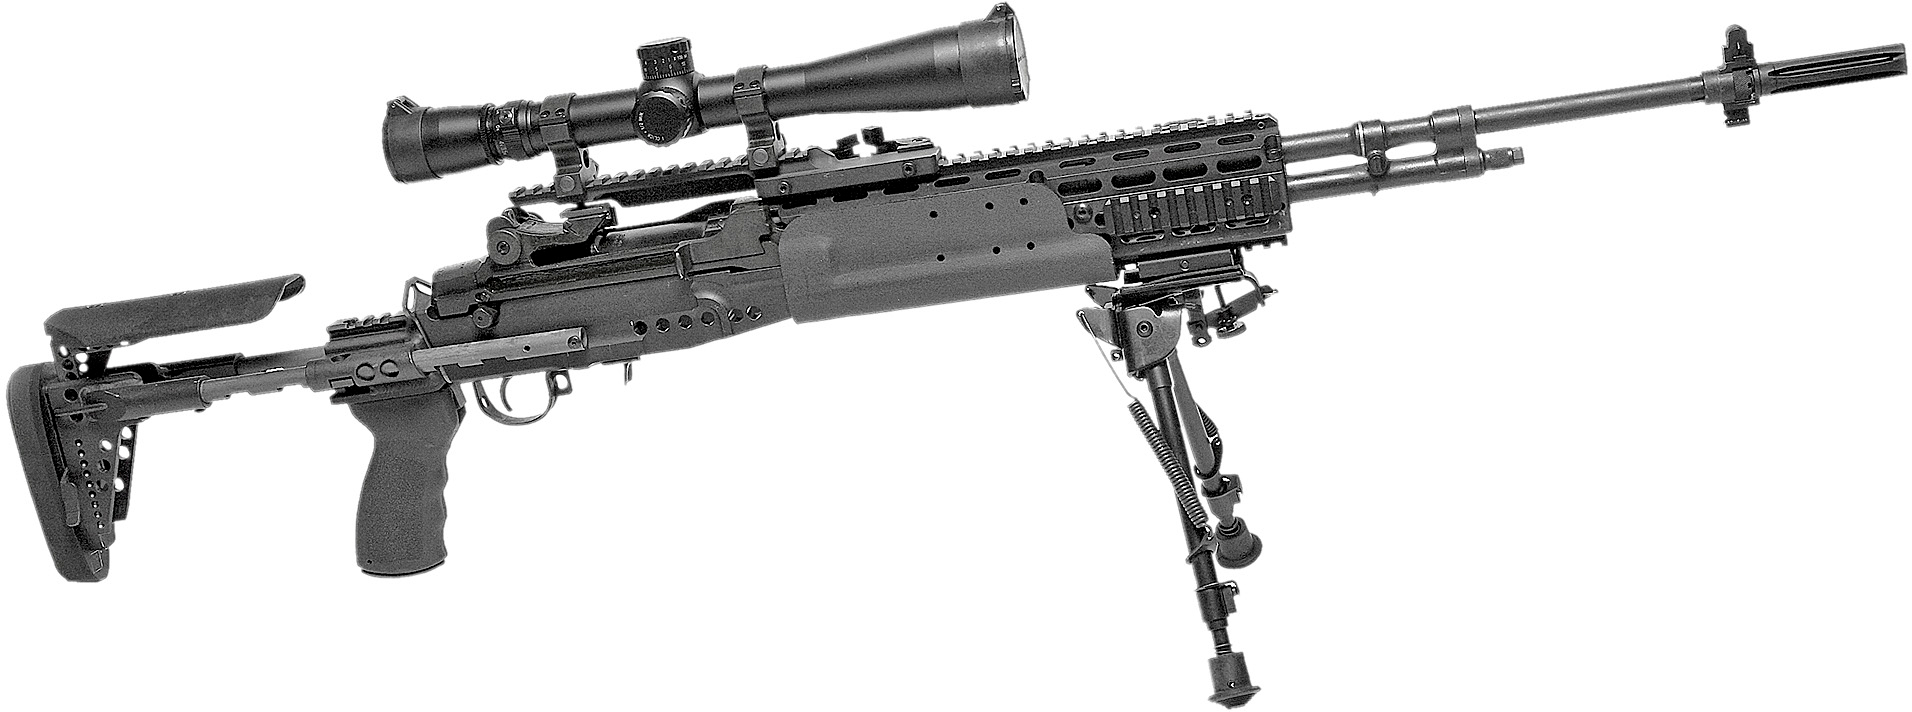 М14 — Enhanced Battle Rifle